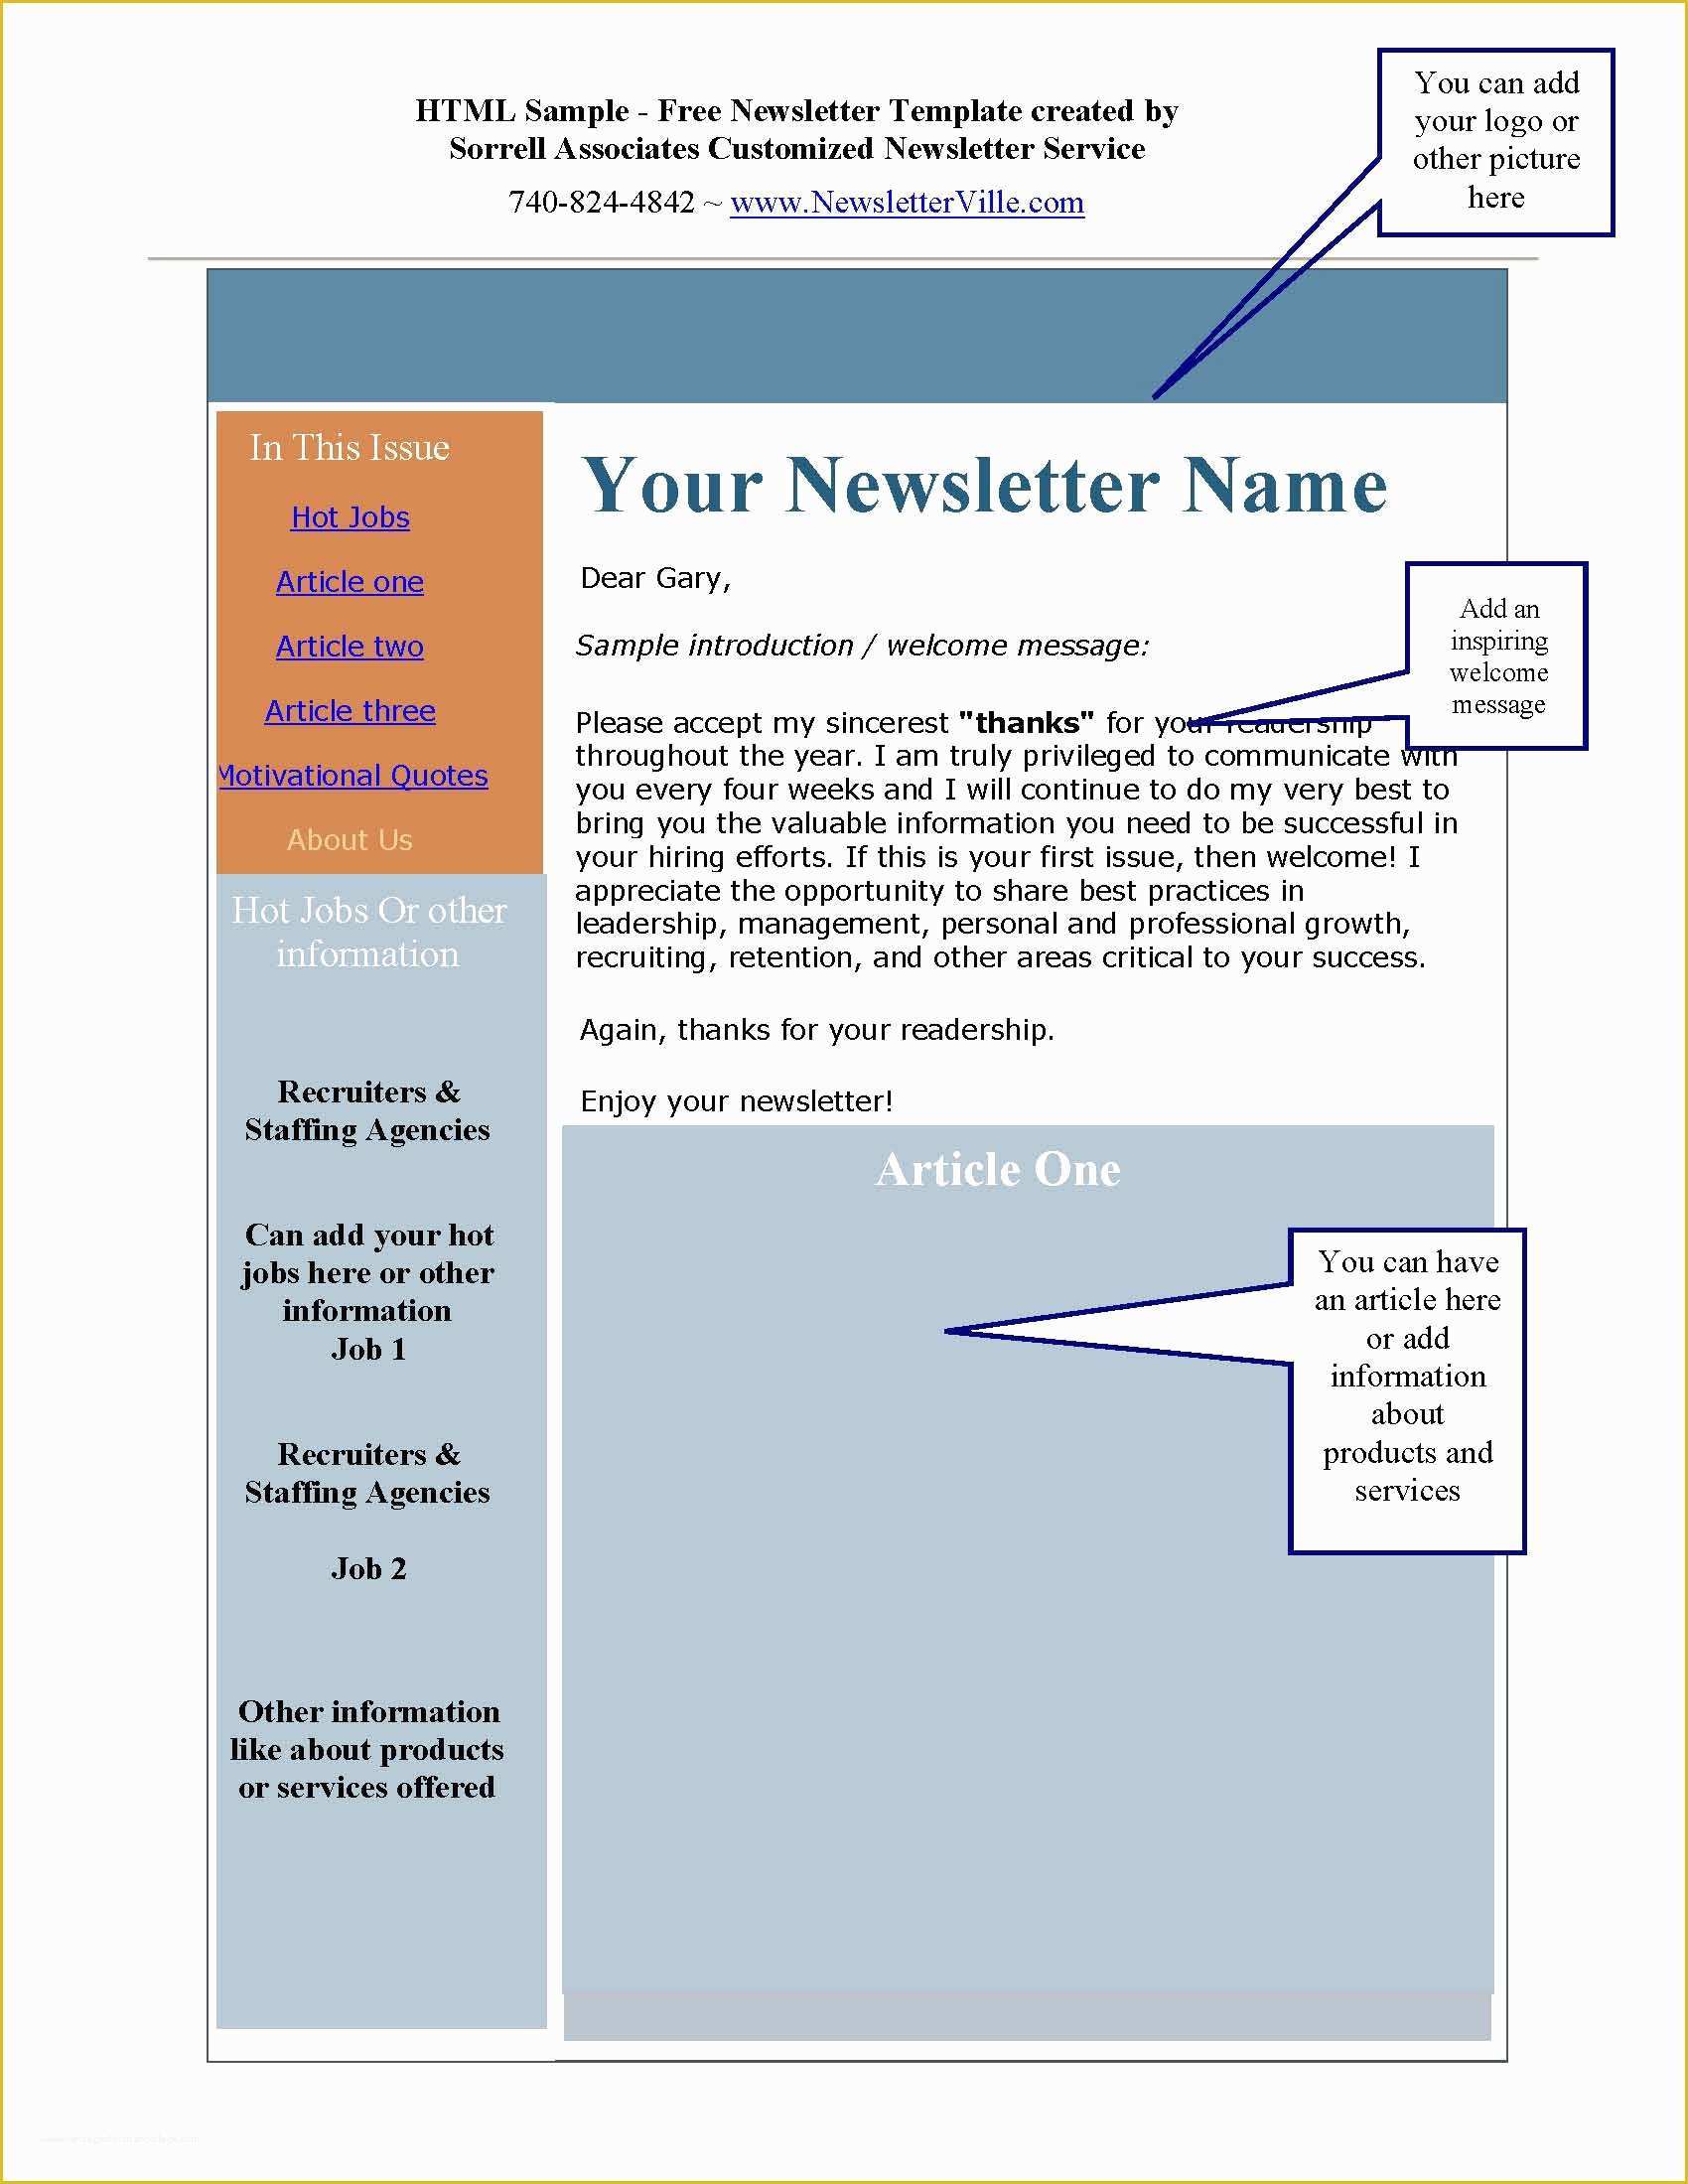 Free Newsletter Template HTML Of Newsletter &amp; Blog Articles Provided Plus Free Newsletter